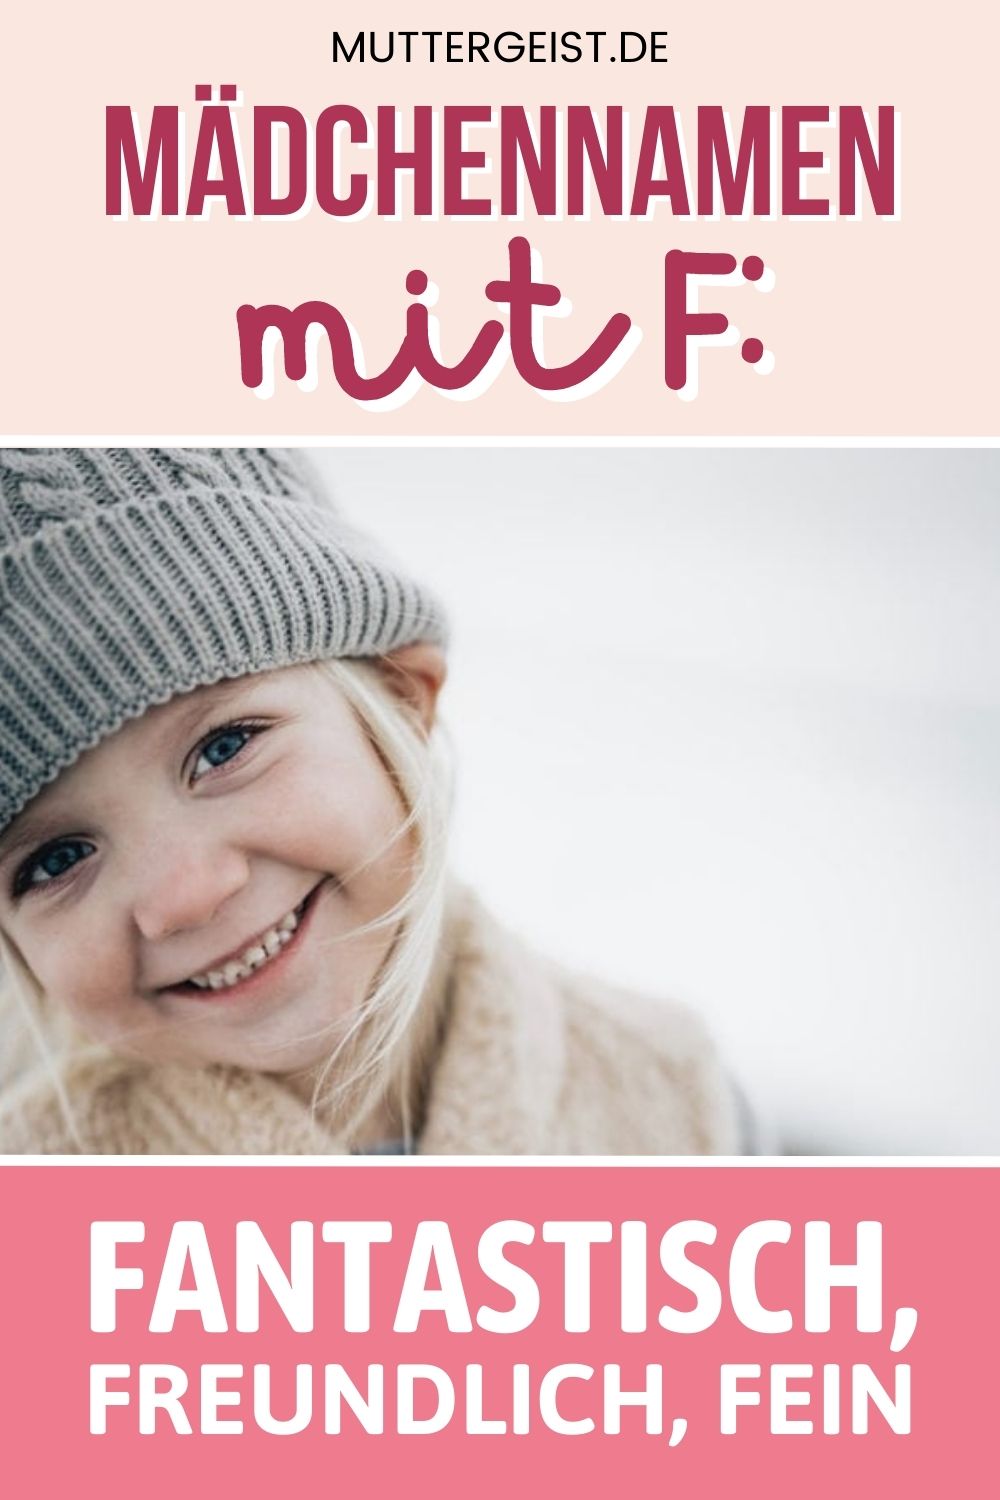 Mädchennamen mit F – Fantastisch, freundlich, fein Pinterest